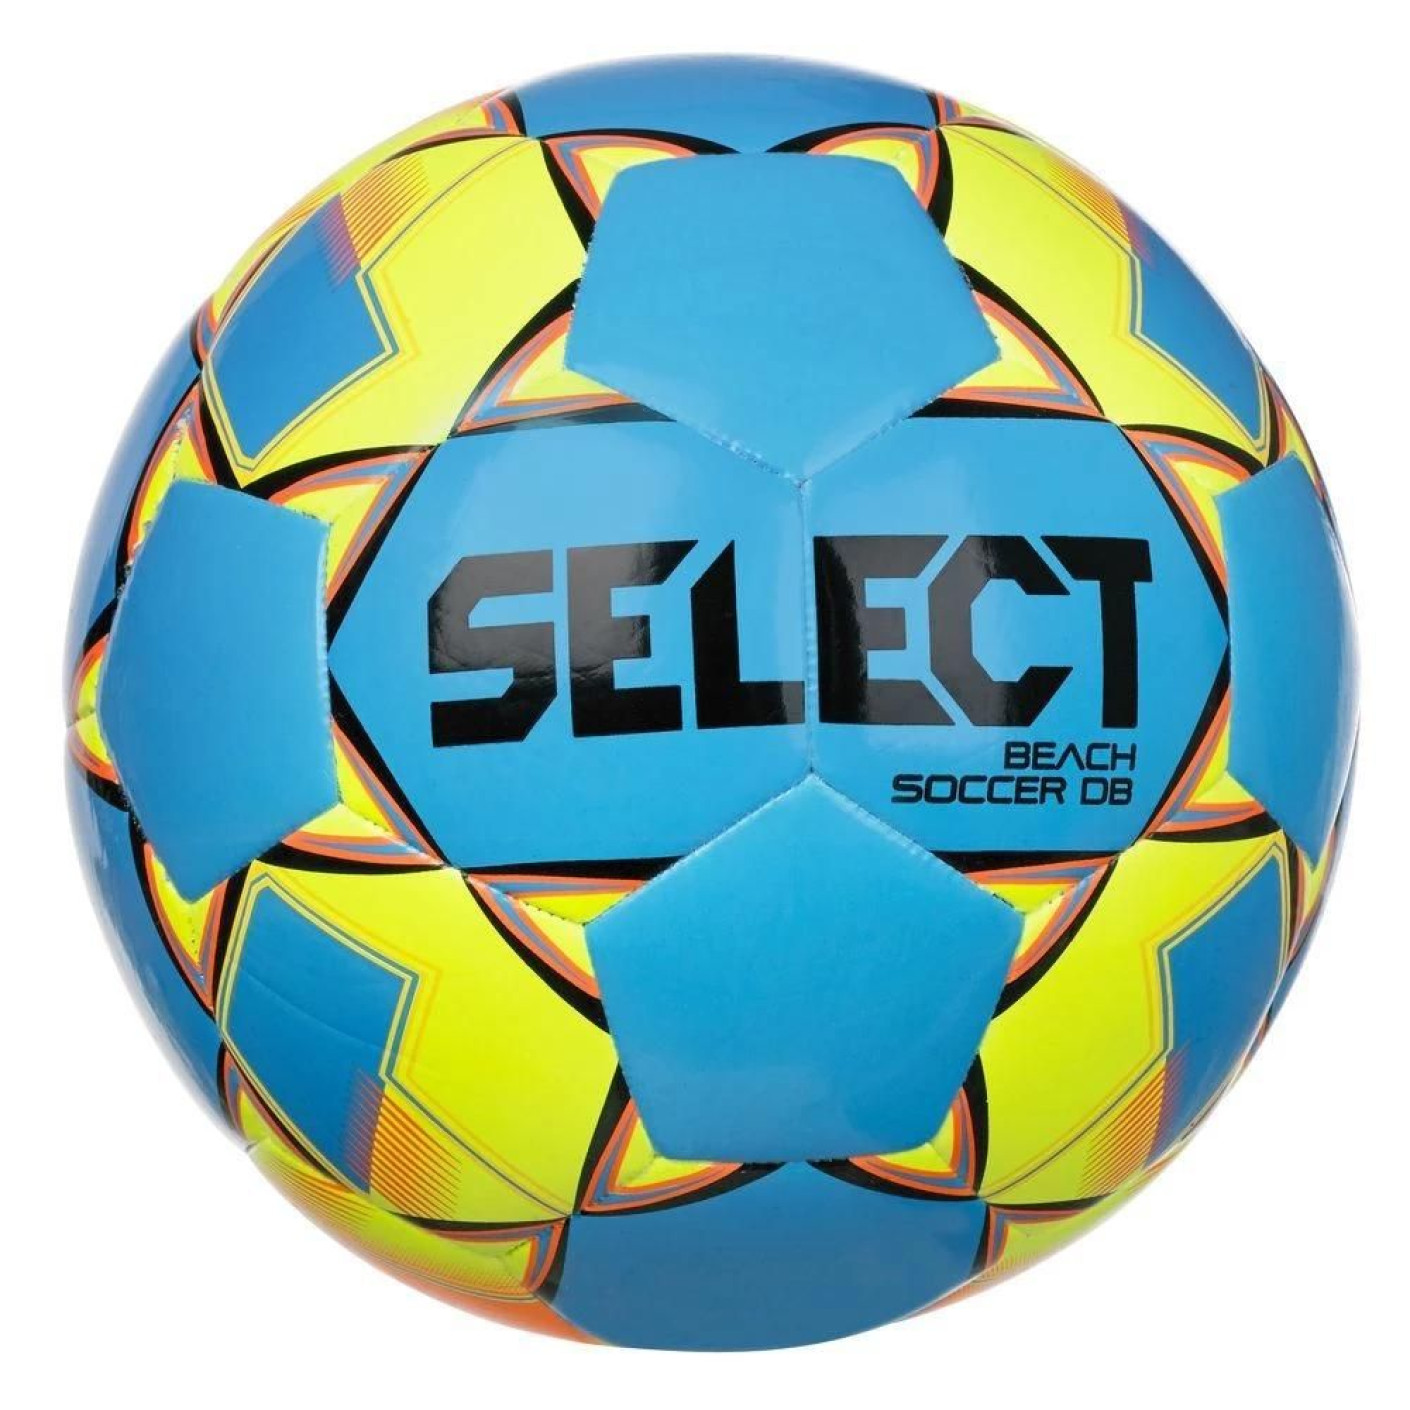 Select Beach Soccer DB v22 Ballon de Foot Taille 5 Bleu